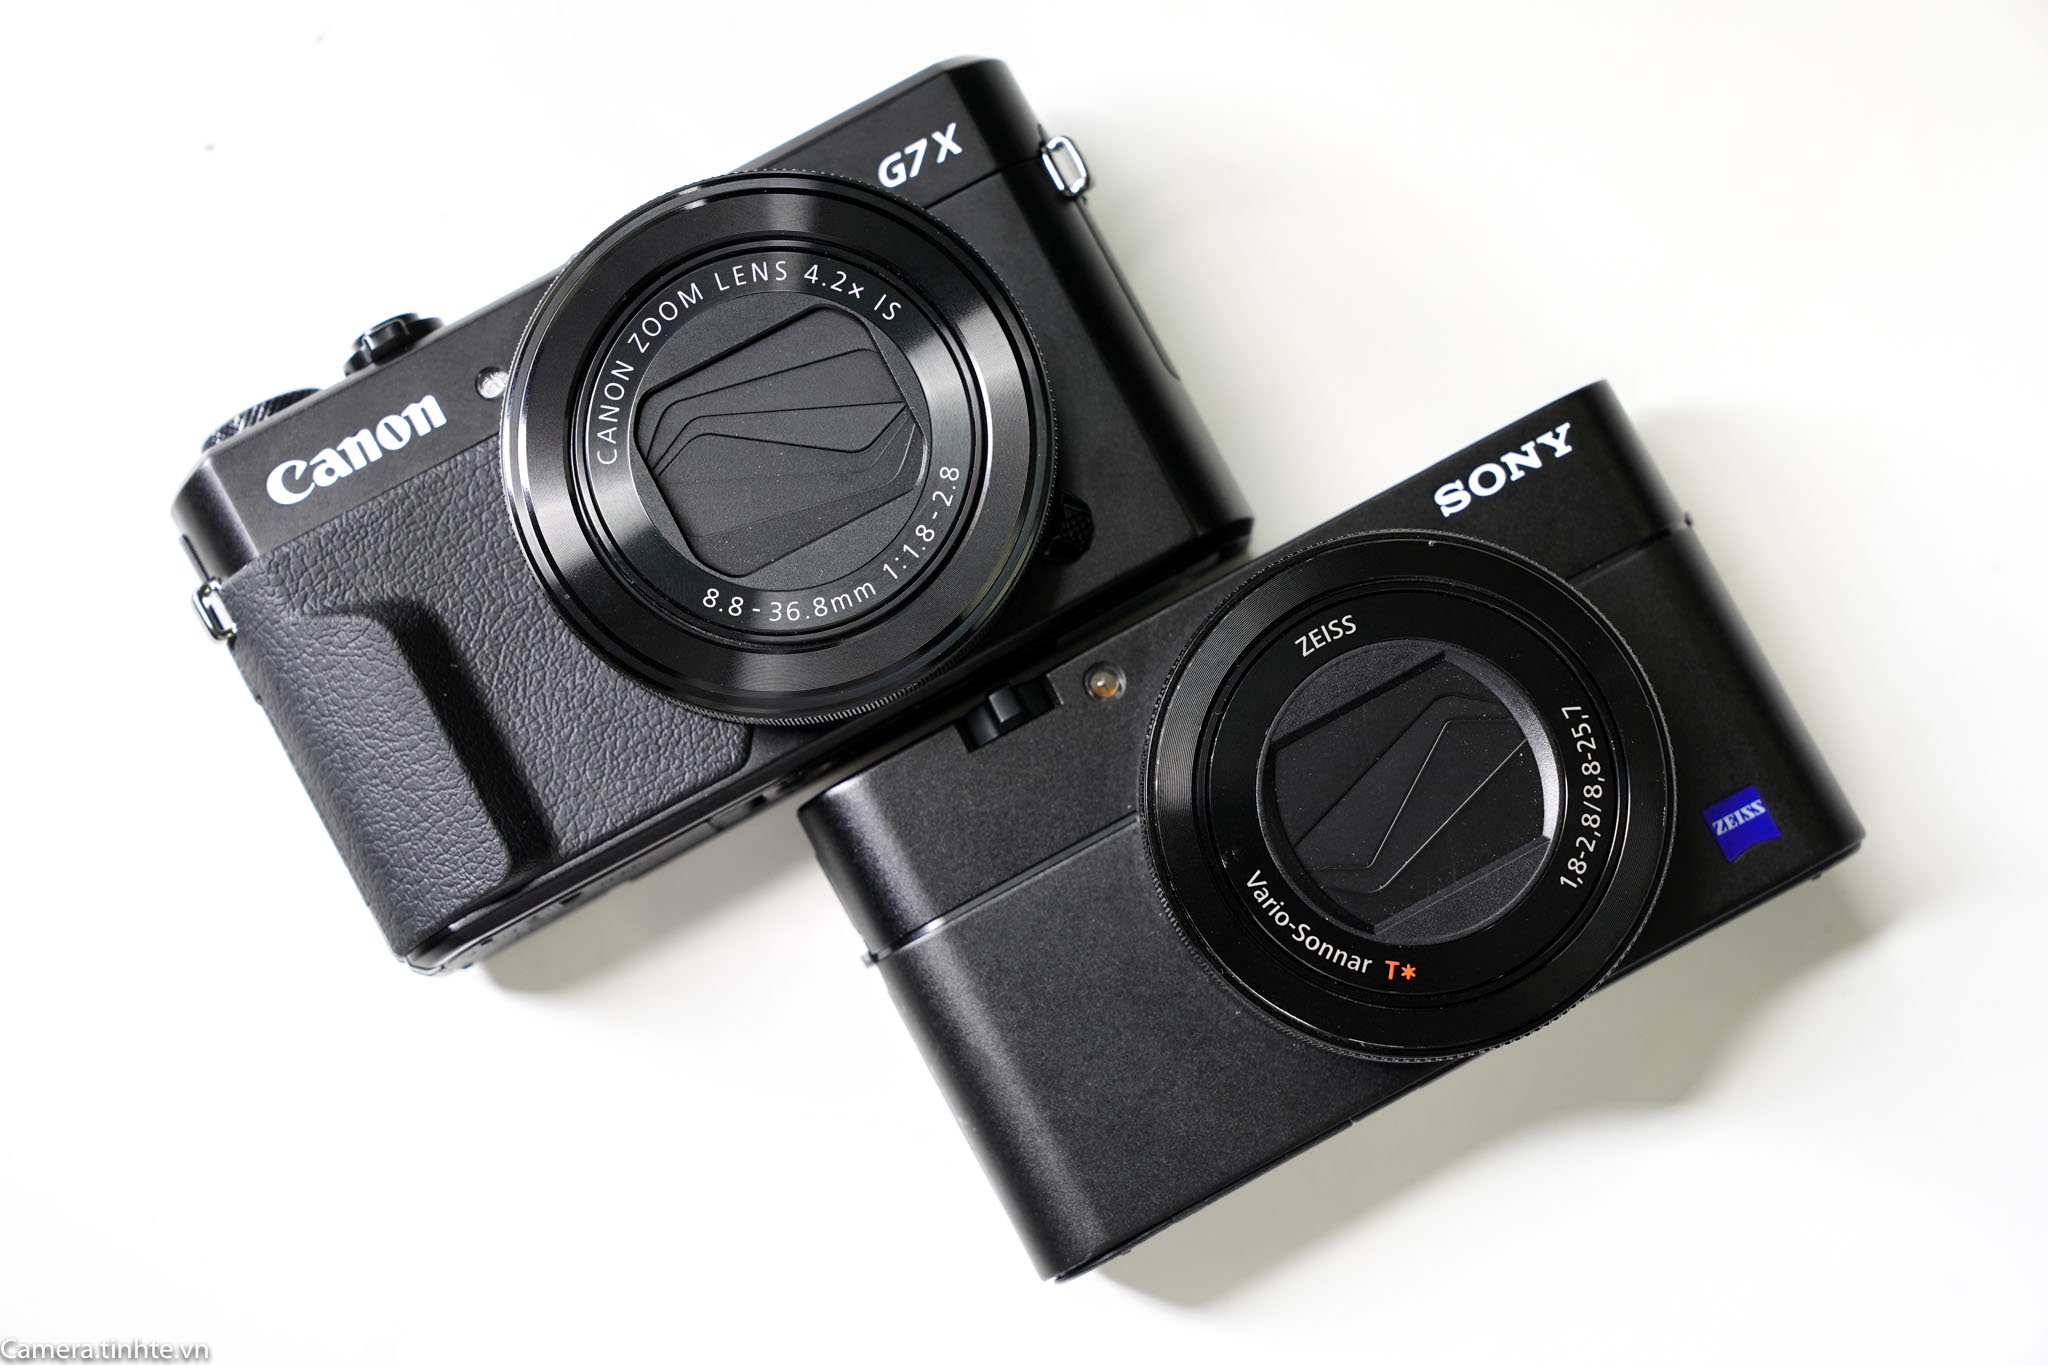 Đang tải SOny RX100V vs Canon G7X II - Camera.tinhte.vn -4.jpg…